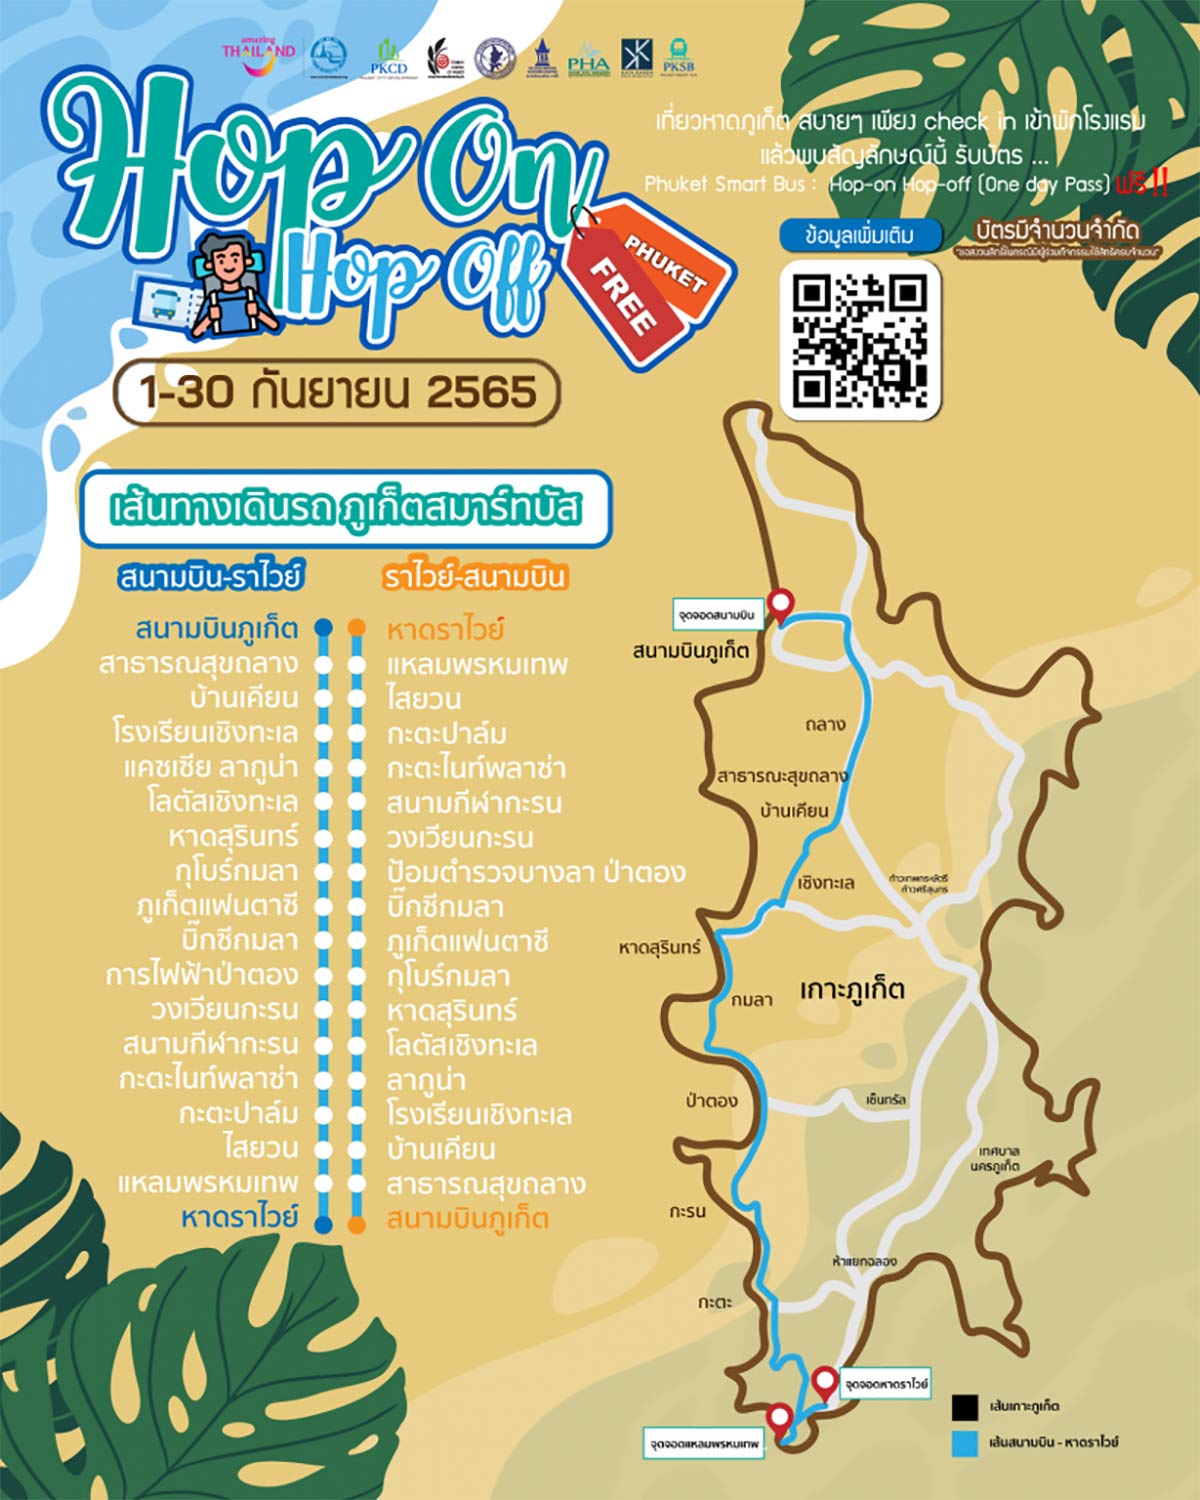 เที่ยวภูเก็ตรับฟรี บัตร 1 Day Pass ใช้ขึ้น Phuket Smart Bus ไม่อั้น